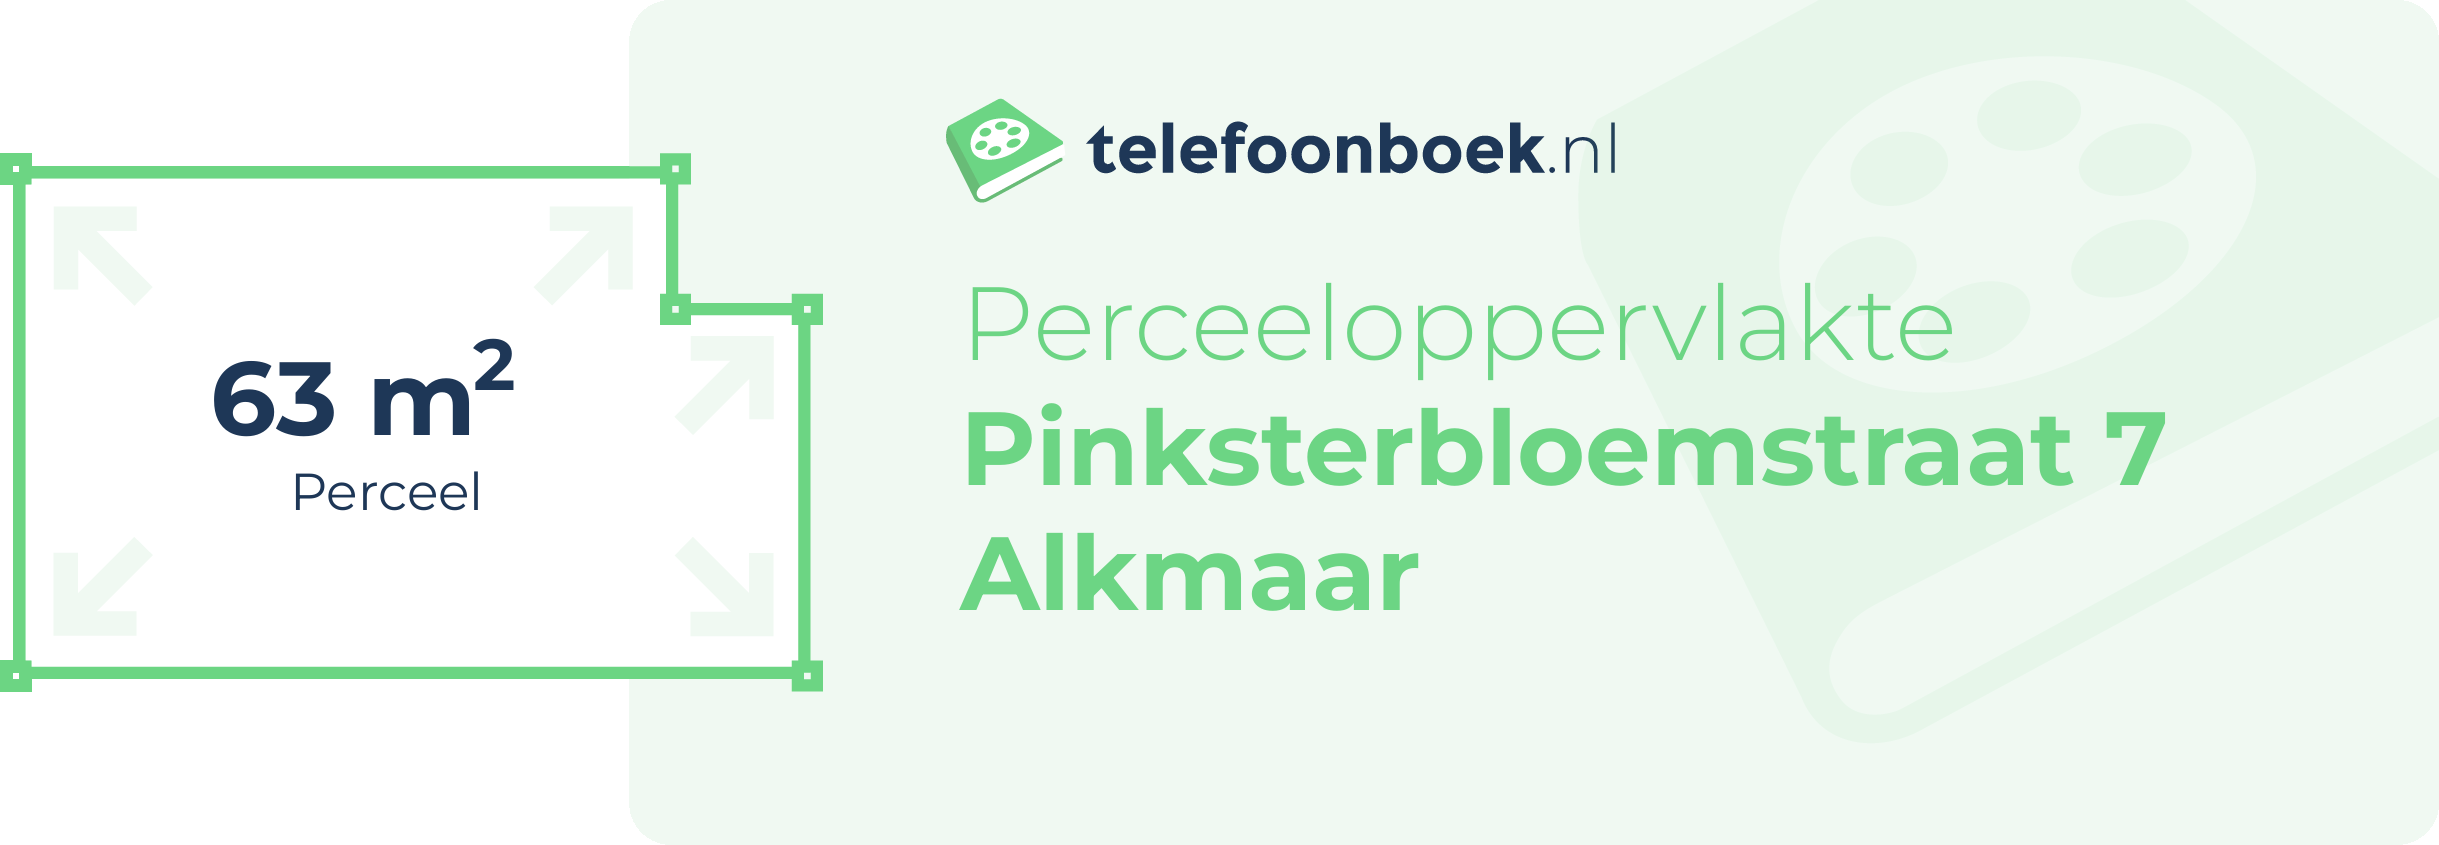 Perceeloppervlakte Pinksterbloemstraat 7 Alkmaar